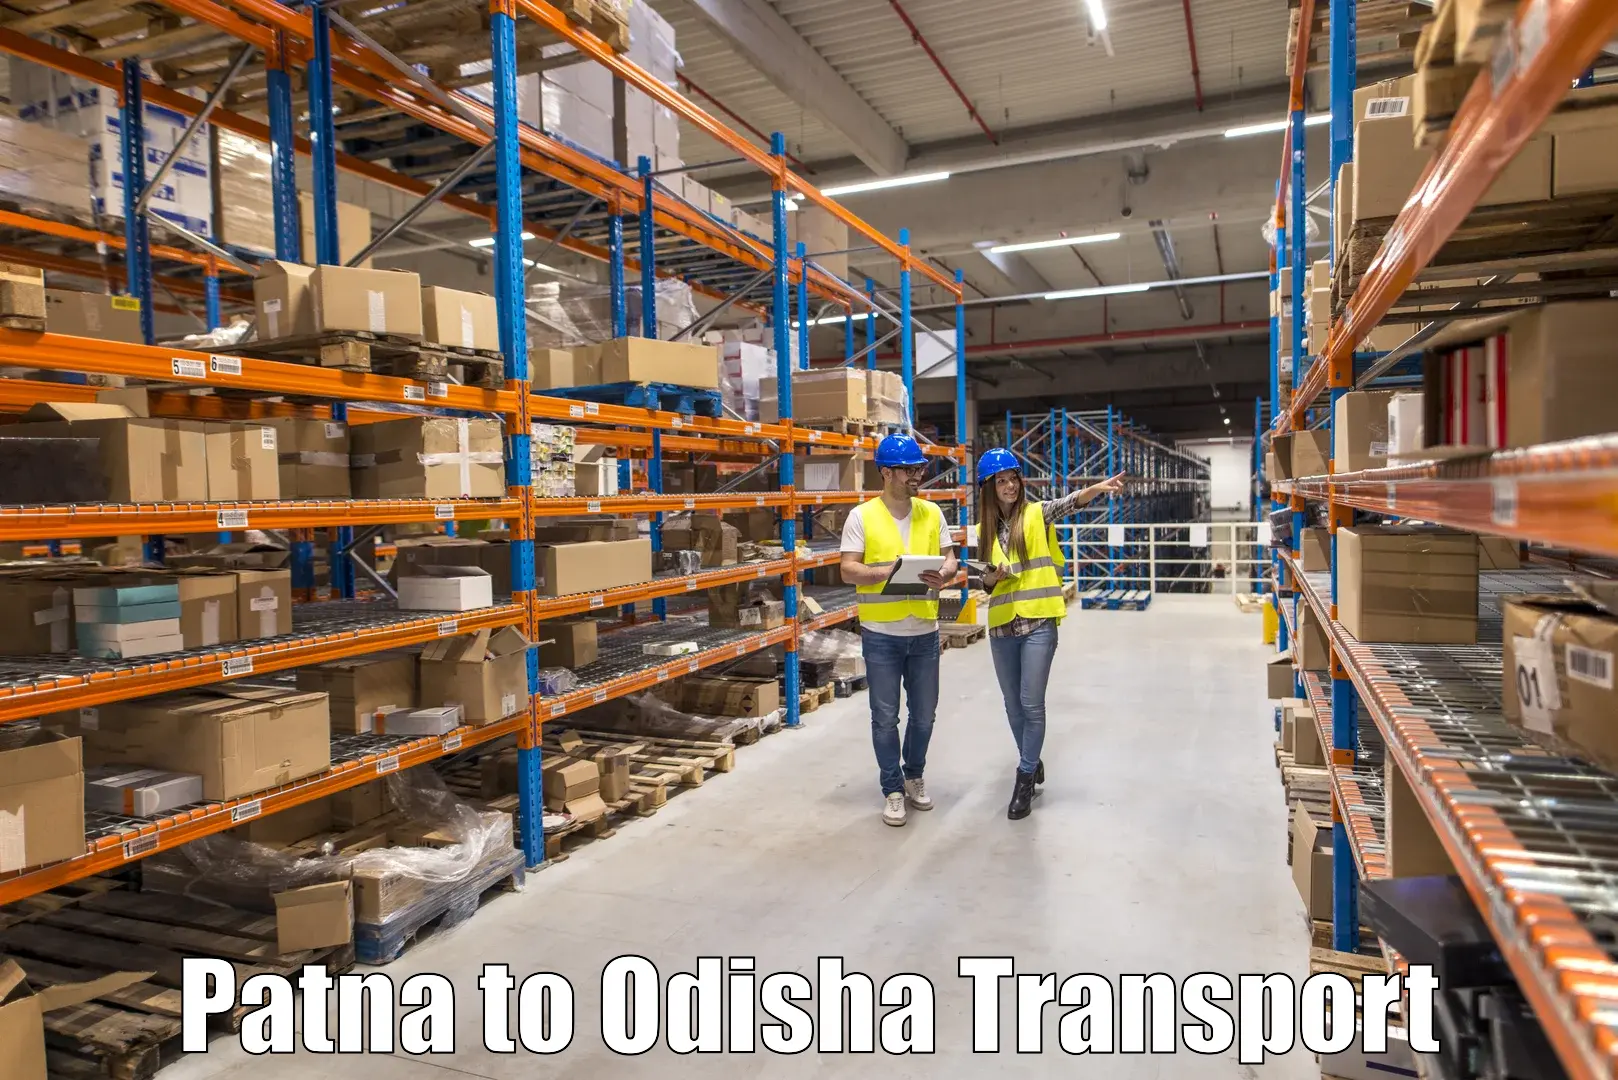 Container transportation services Patna to Junagarh Kalahandi